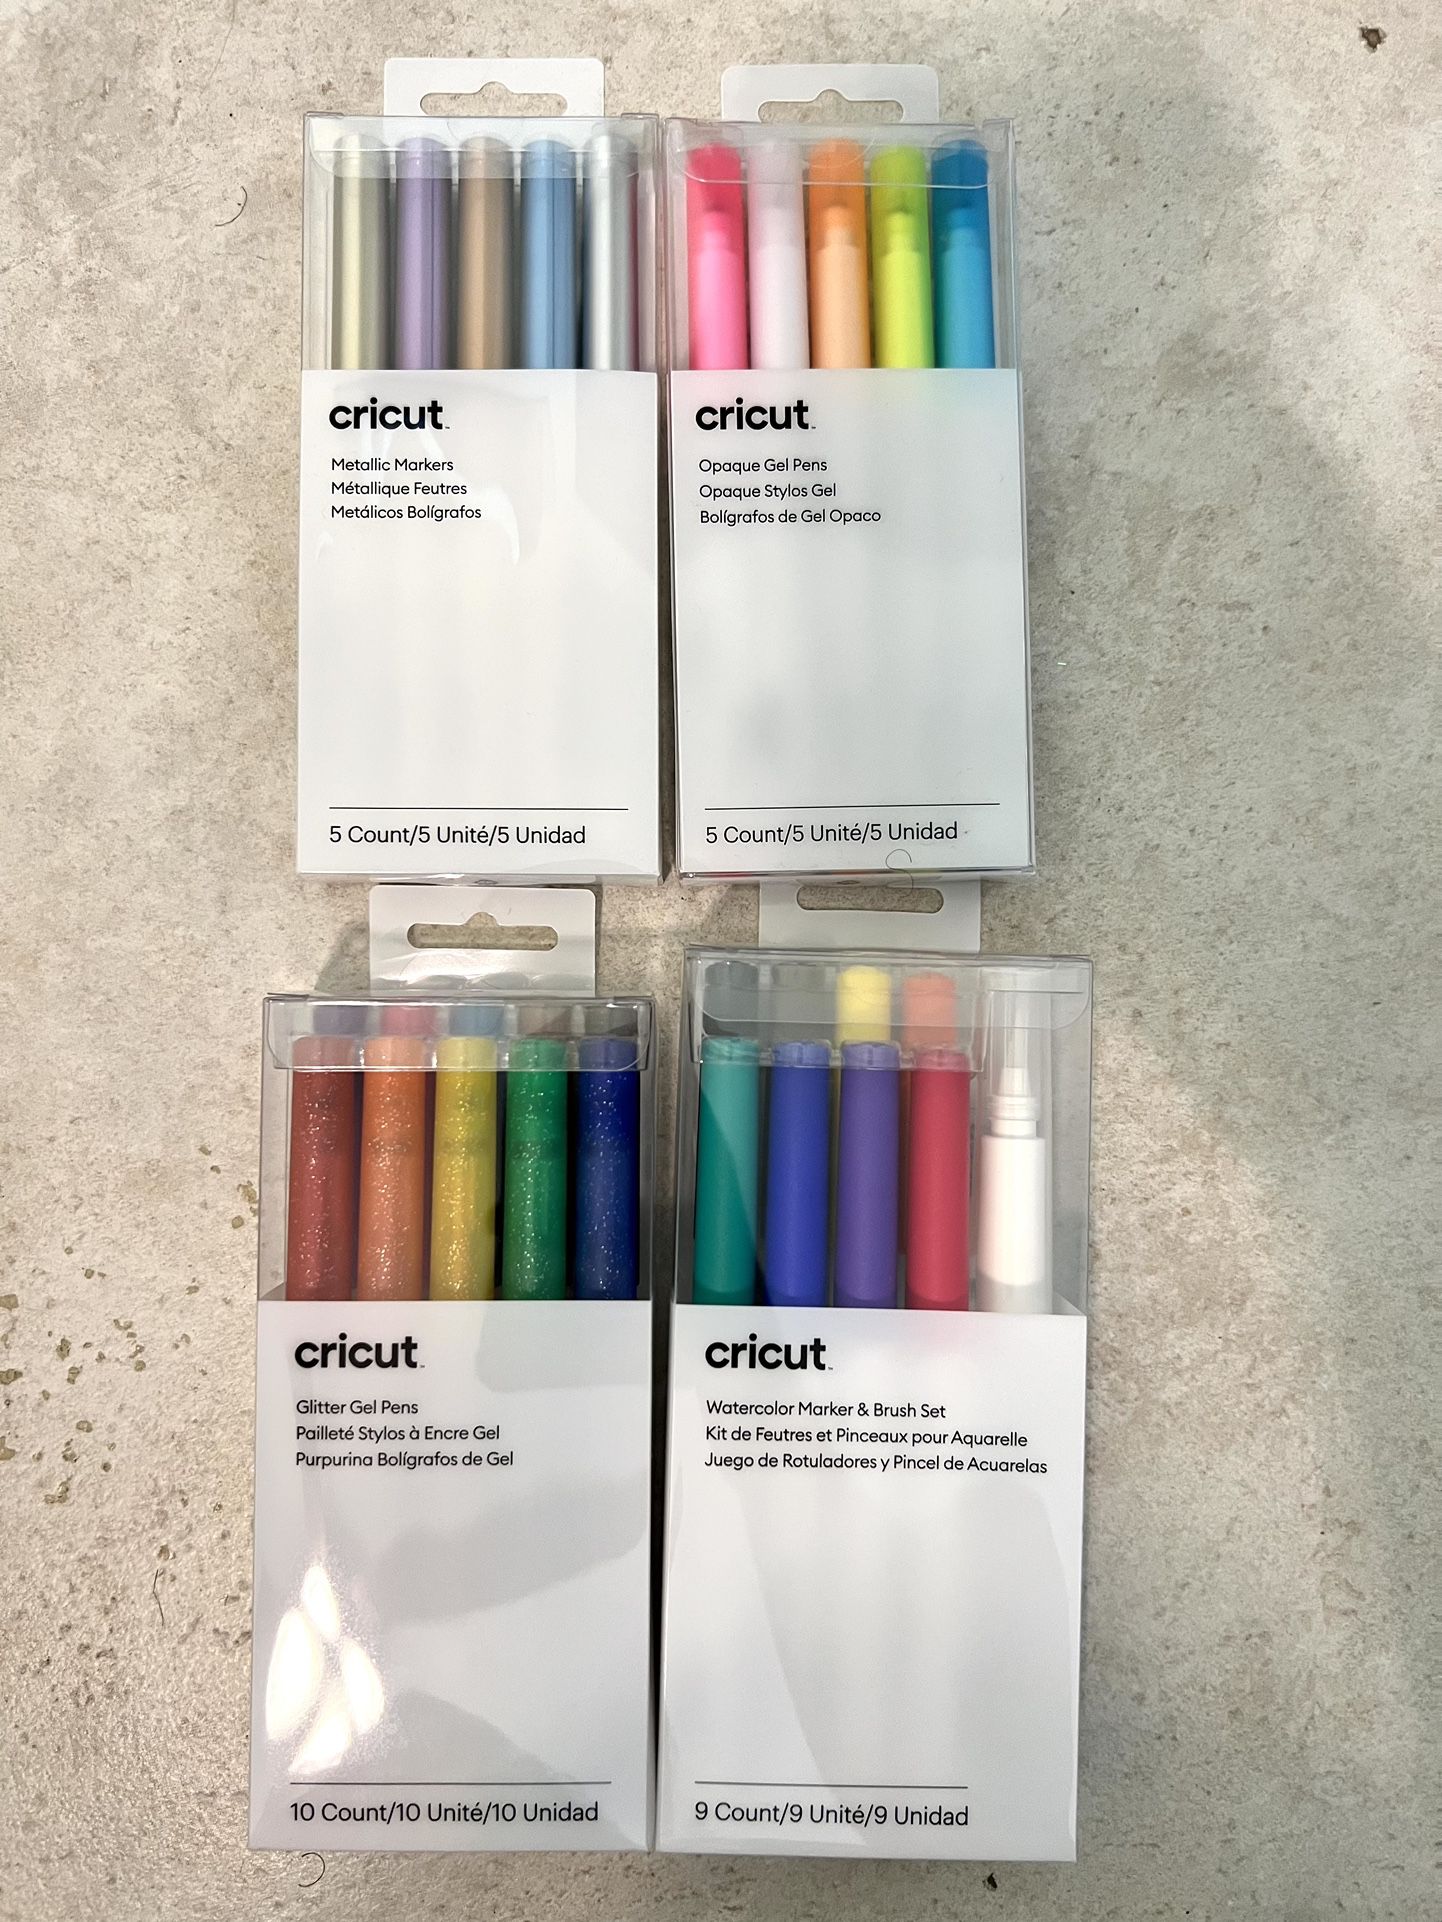 Cricut Glitter Gel and Metallic Pen Sets 